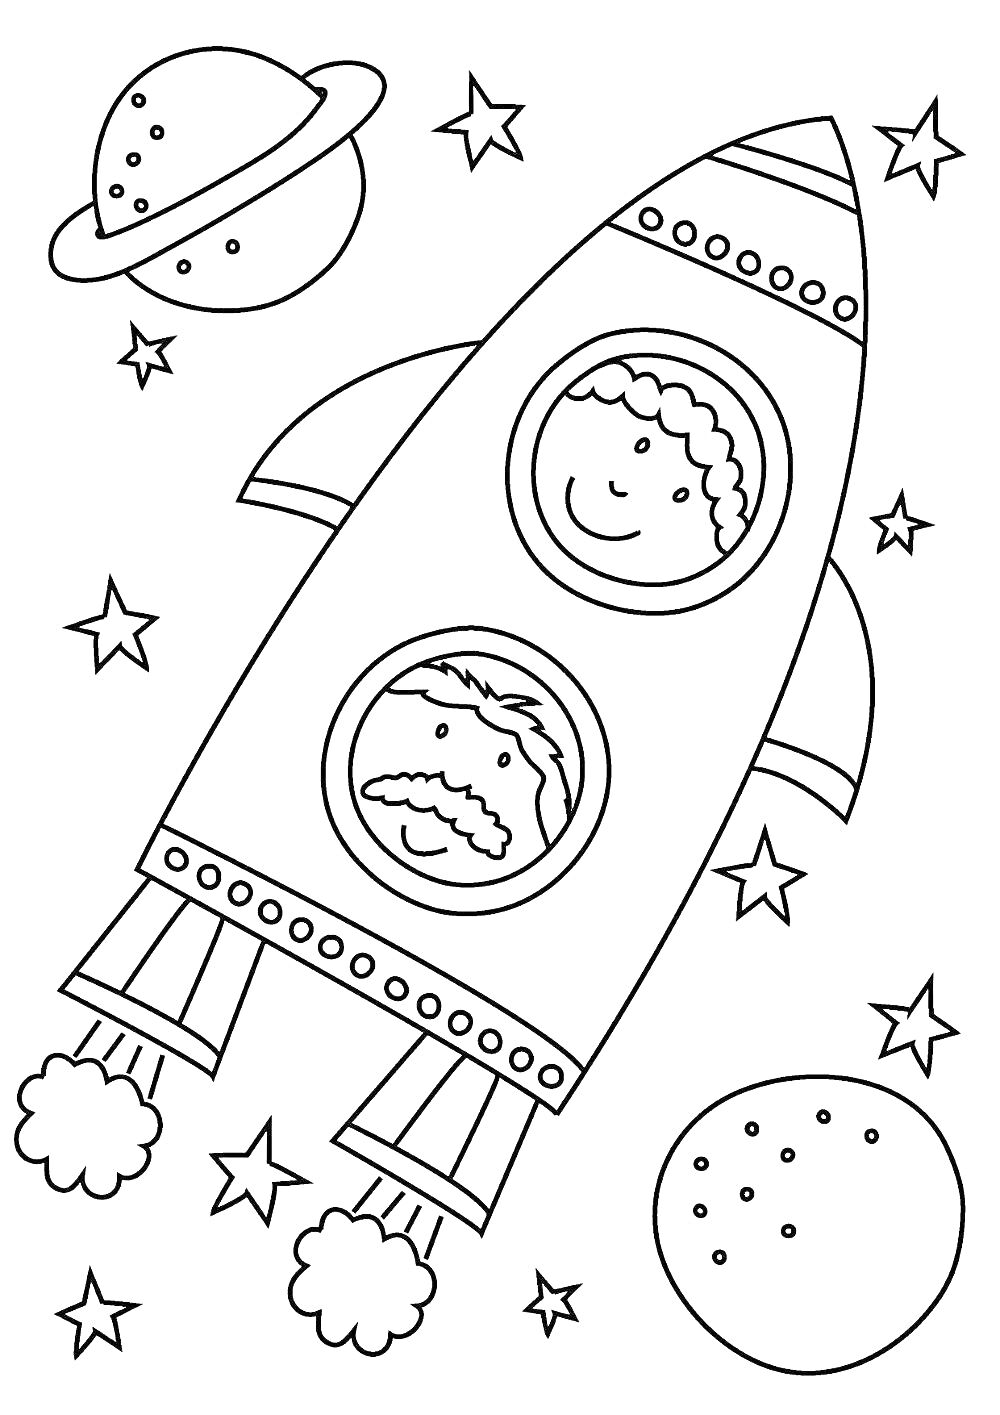 Два человека в космическом корабле с иллюминаторами, окружённые звёздами, планетами и астероидами